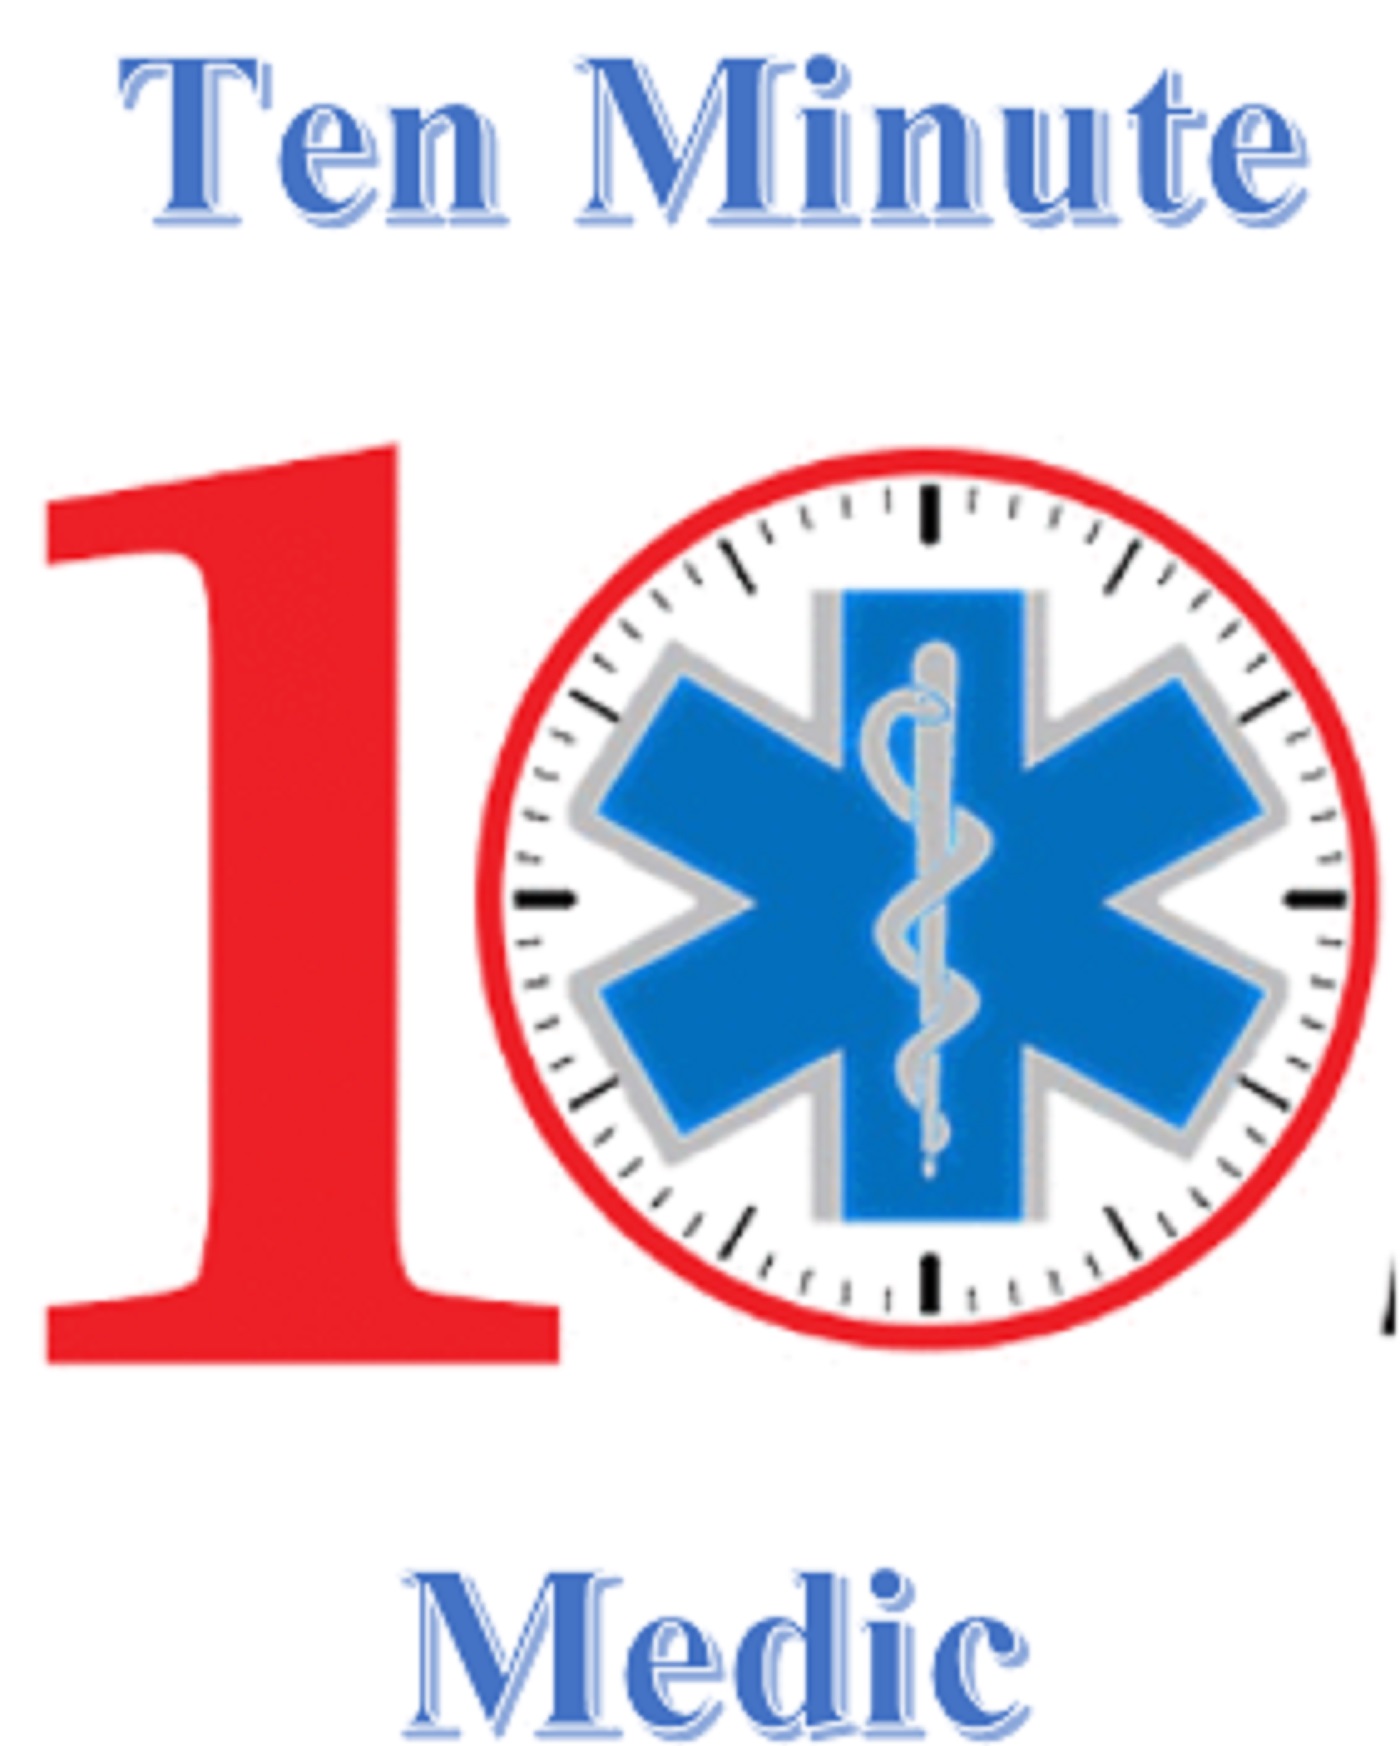 Ten Minute Medic